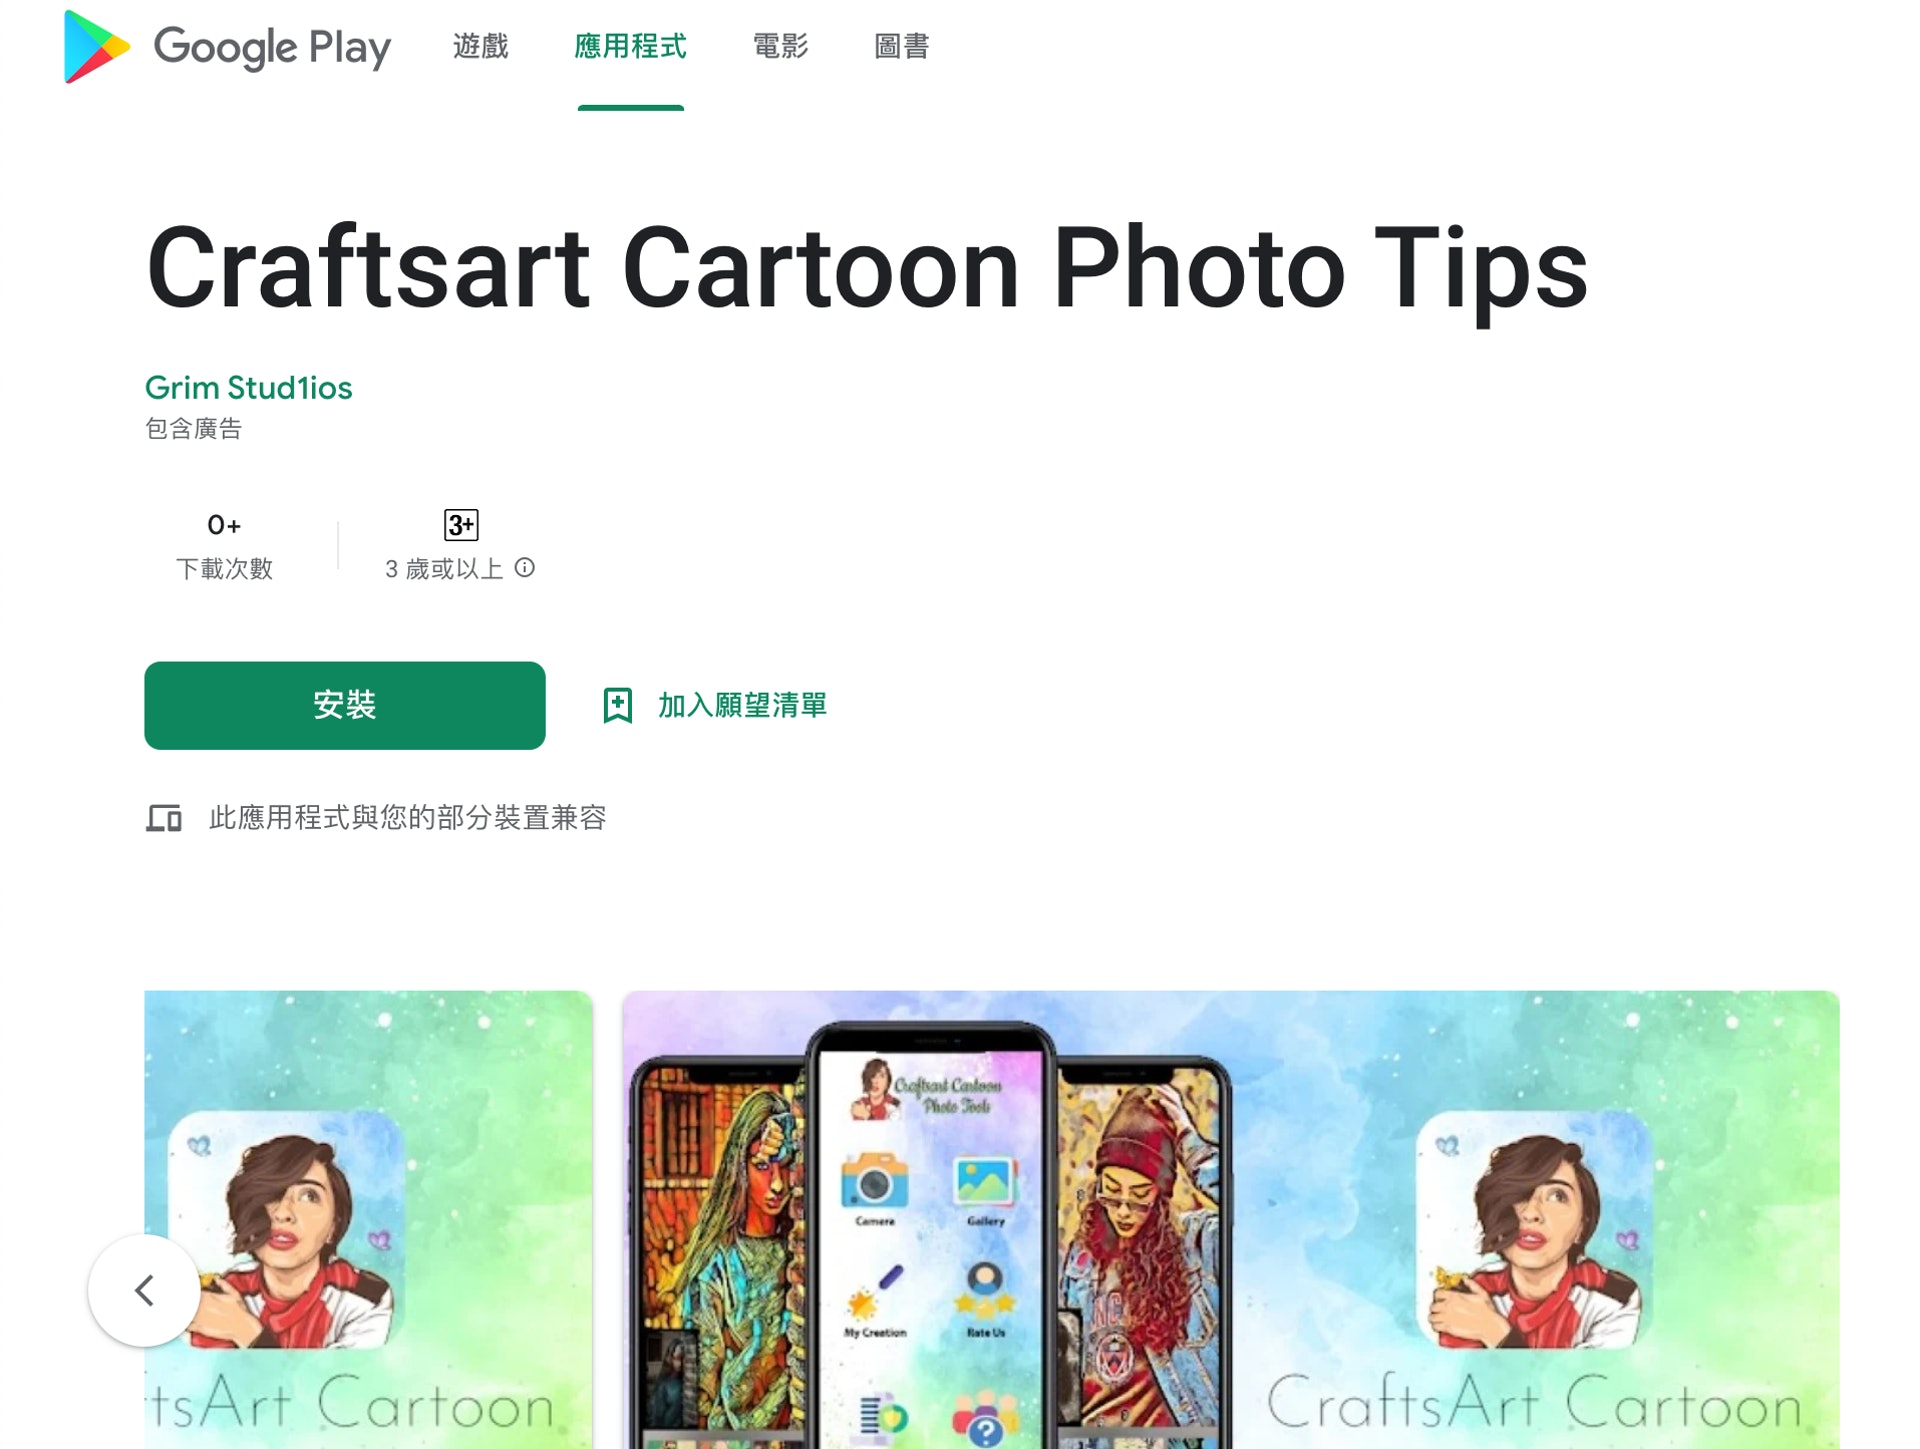 被 Pradeo 發現的《Craftsart Cartoon Photo Tools》目前已經被 Google Play 移除，但《香港01》記者卻在Play Store 上找到了圖像幾乎一模一樣的《Craftsart Cartoon Photo Tips》，似乎就是重新包裝的產物